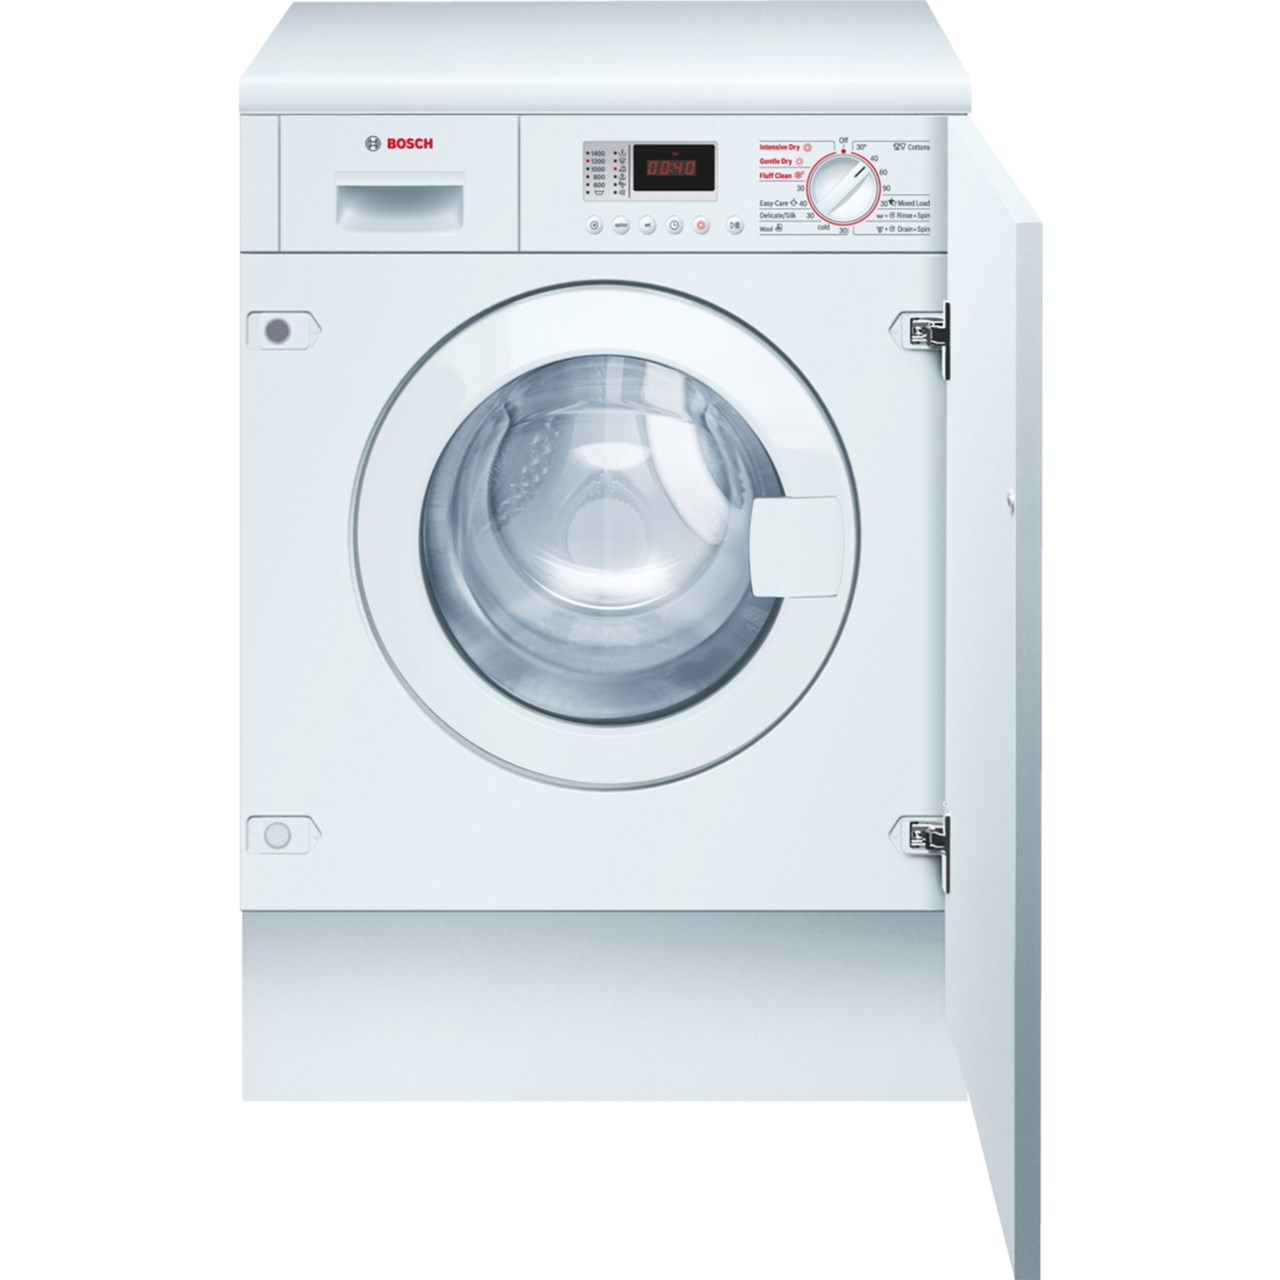 ماشین لباسشویی و خشک کن توکار بوش مدل WKD28350GB ظرفیت 6 کیلوگرم و 3 کیلوگرم خشک کن